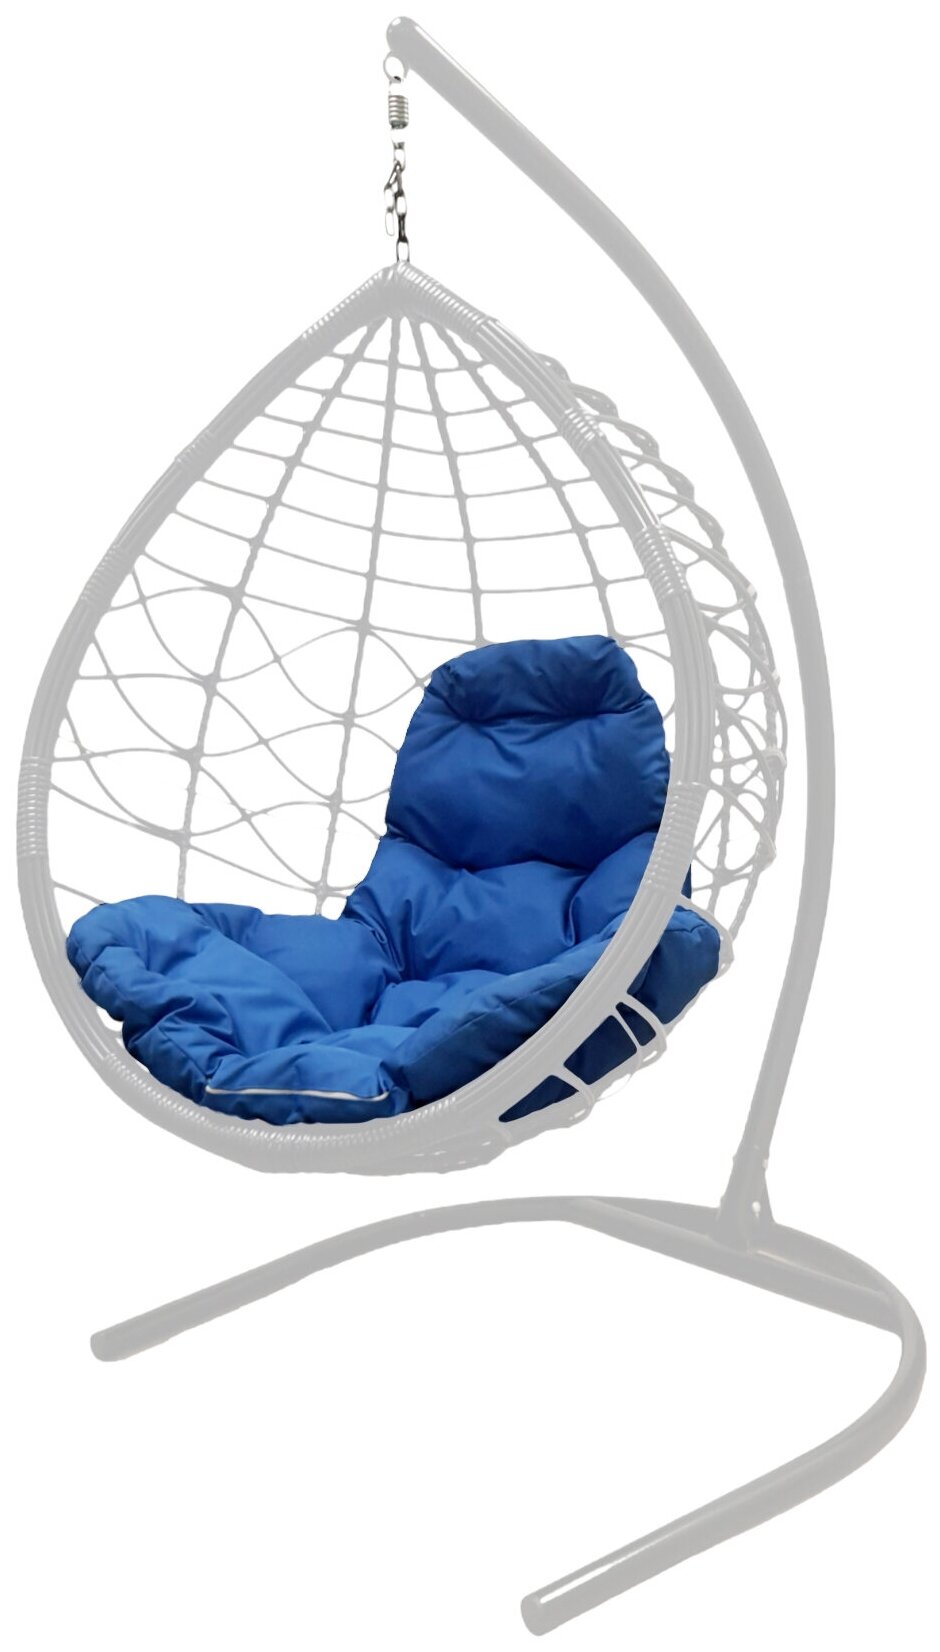 Подвесное кресло белое M-Group Капля лори ротанг 11530110, синяя подушка - фотография № 1